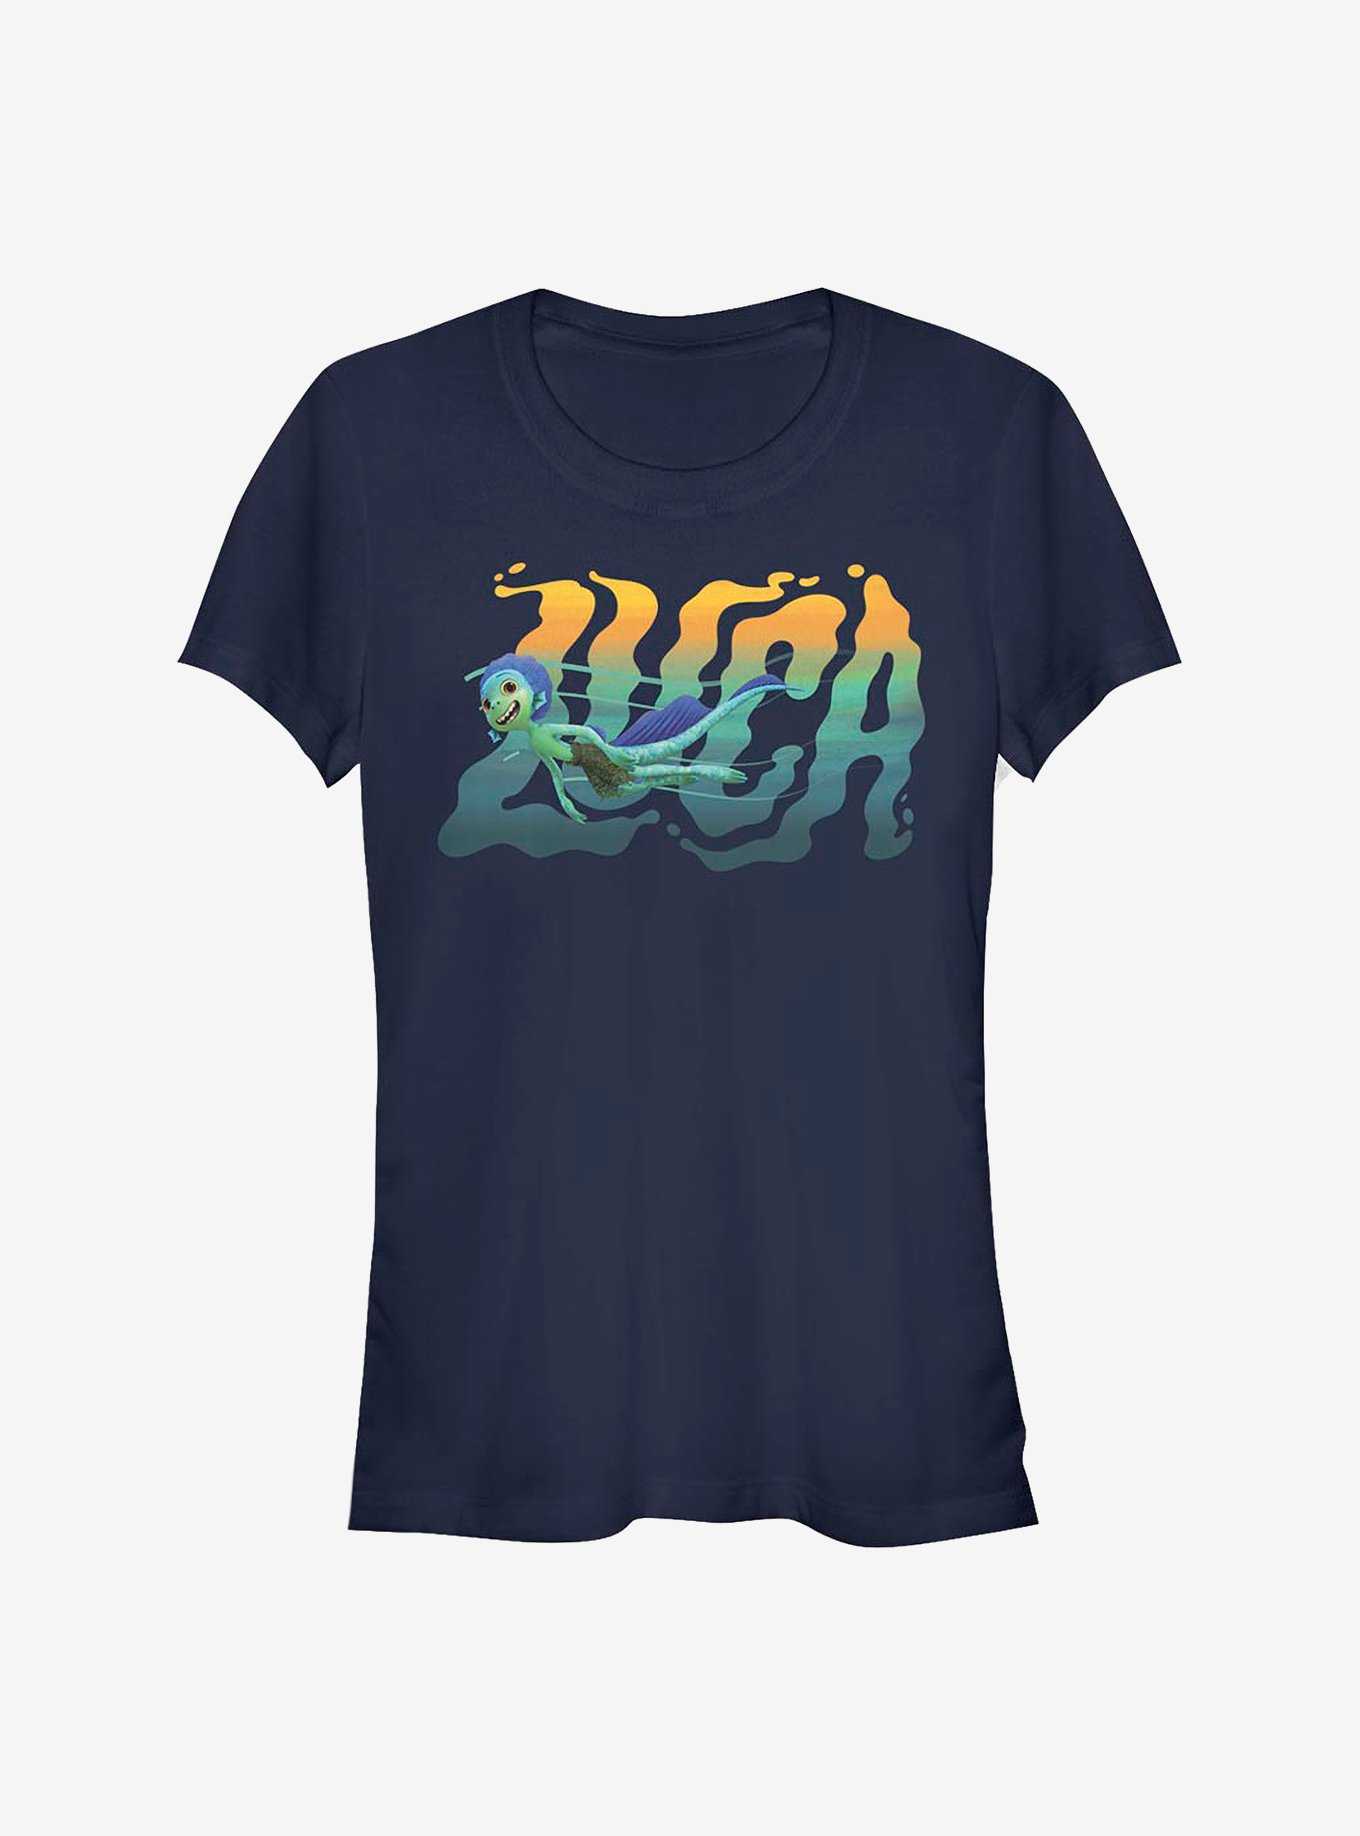 Disney Pixar Luca Swimming Girls T-Shirt, , hi-res